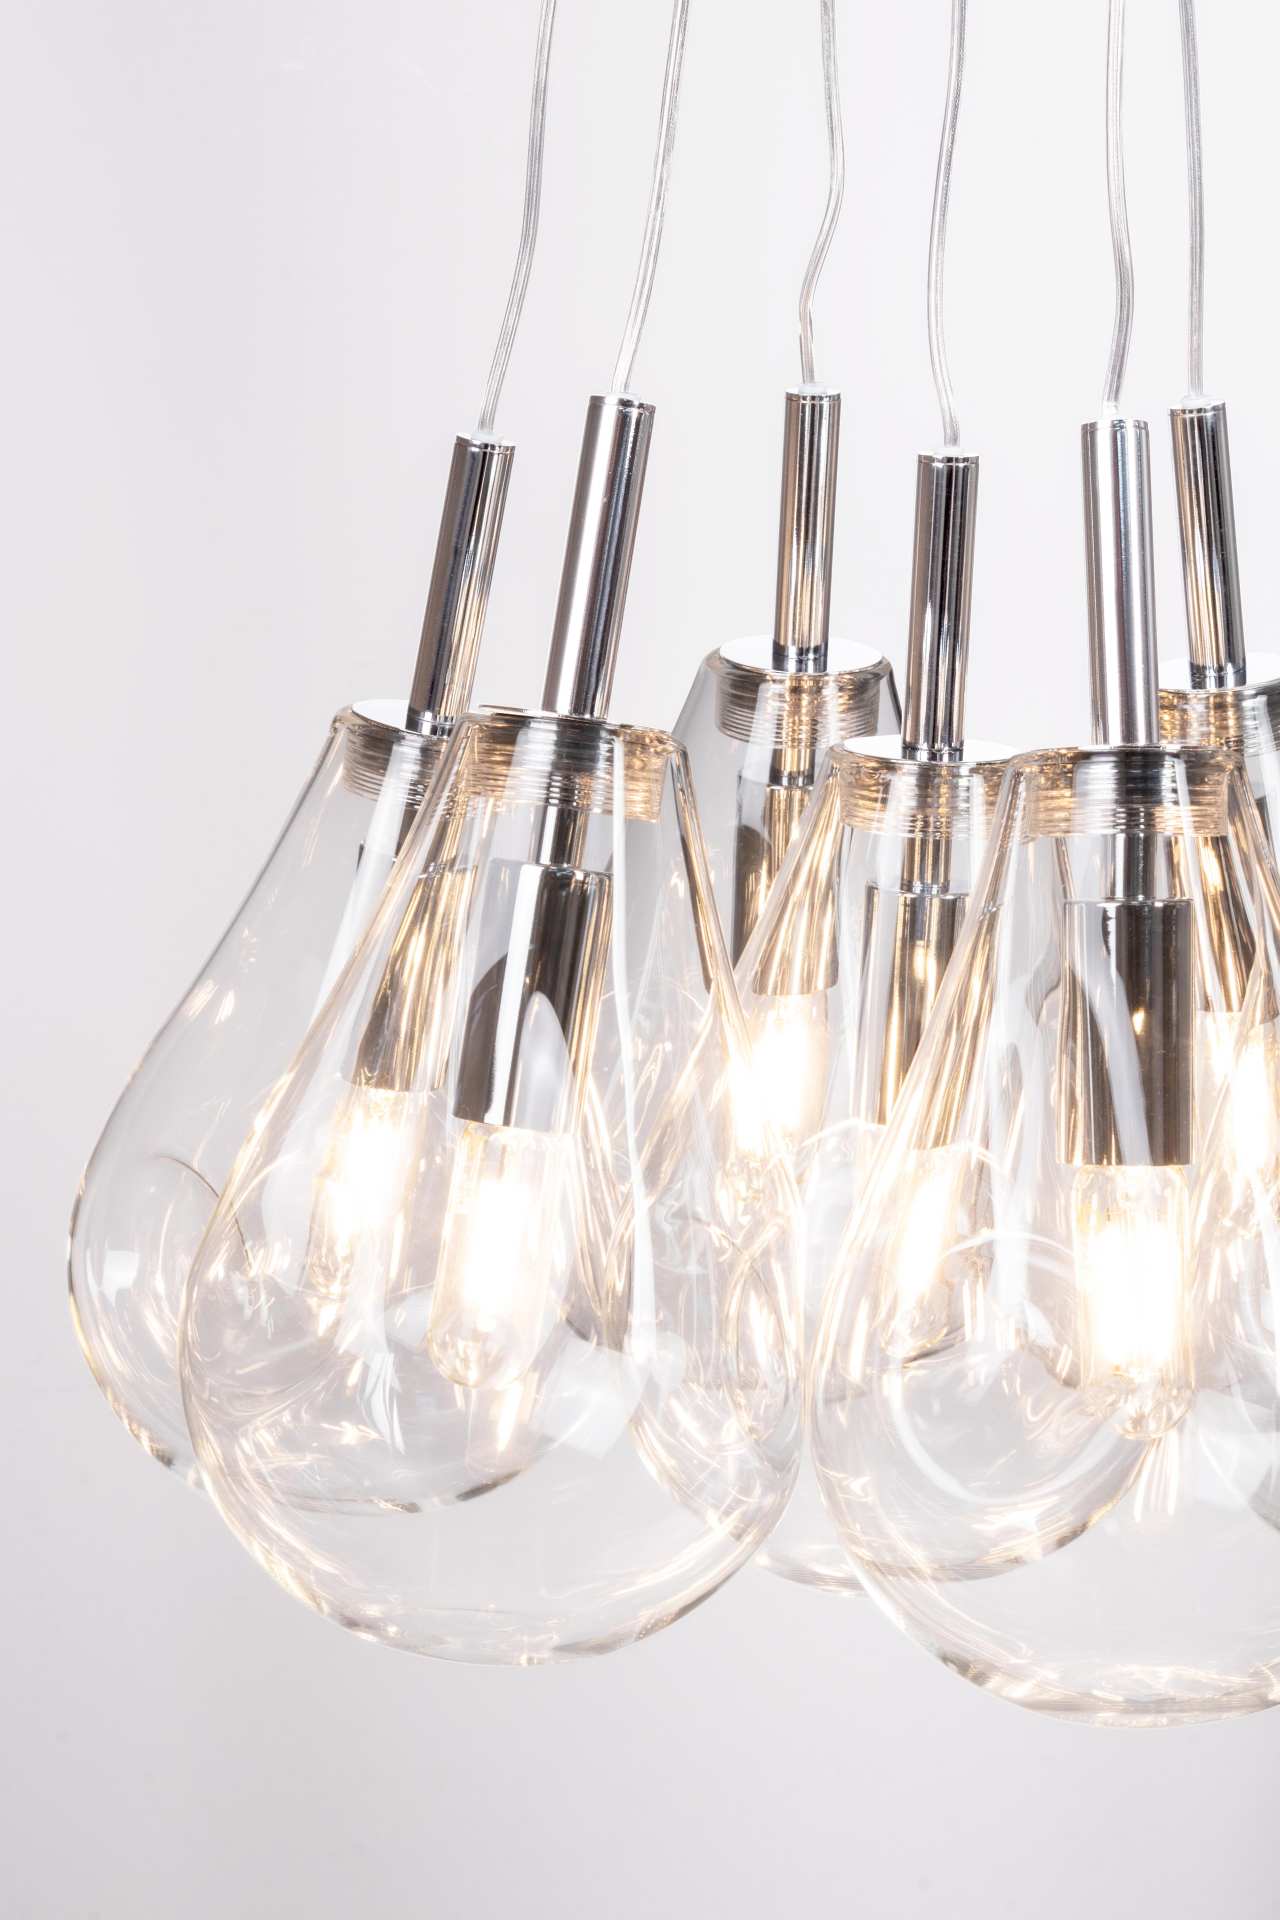 Die Hängeleuchte Refelct überzeugt mit ihrem modernen Design. Gefertigt wurde sie aus Metall, welches einen silberne Farbton besitzt. Die Lampenschirme sind aus Glas und sind klar. Die Lampe besitzt eine Höhe von 120 cm.